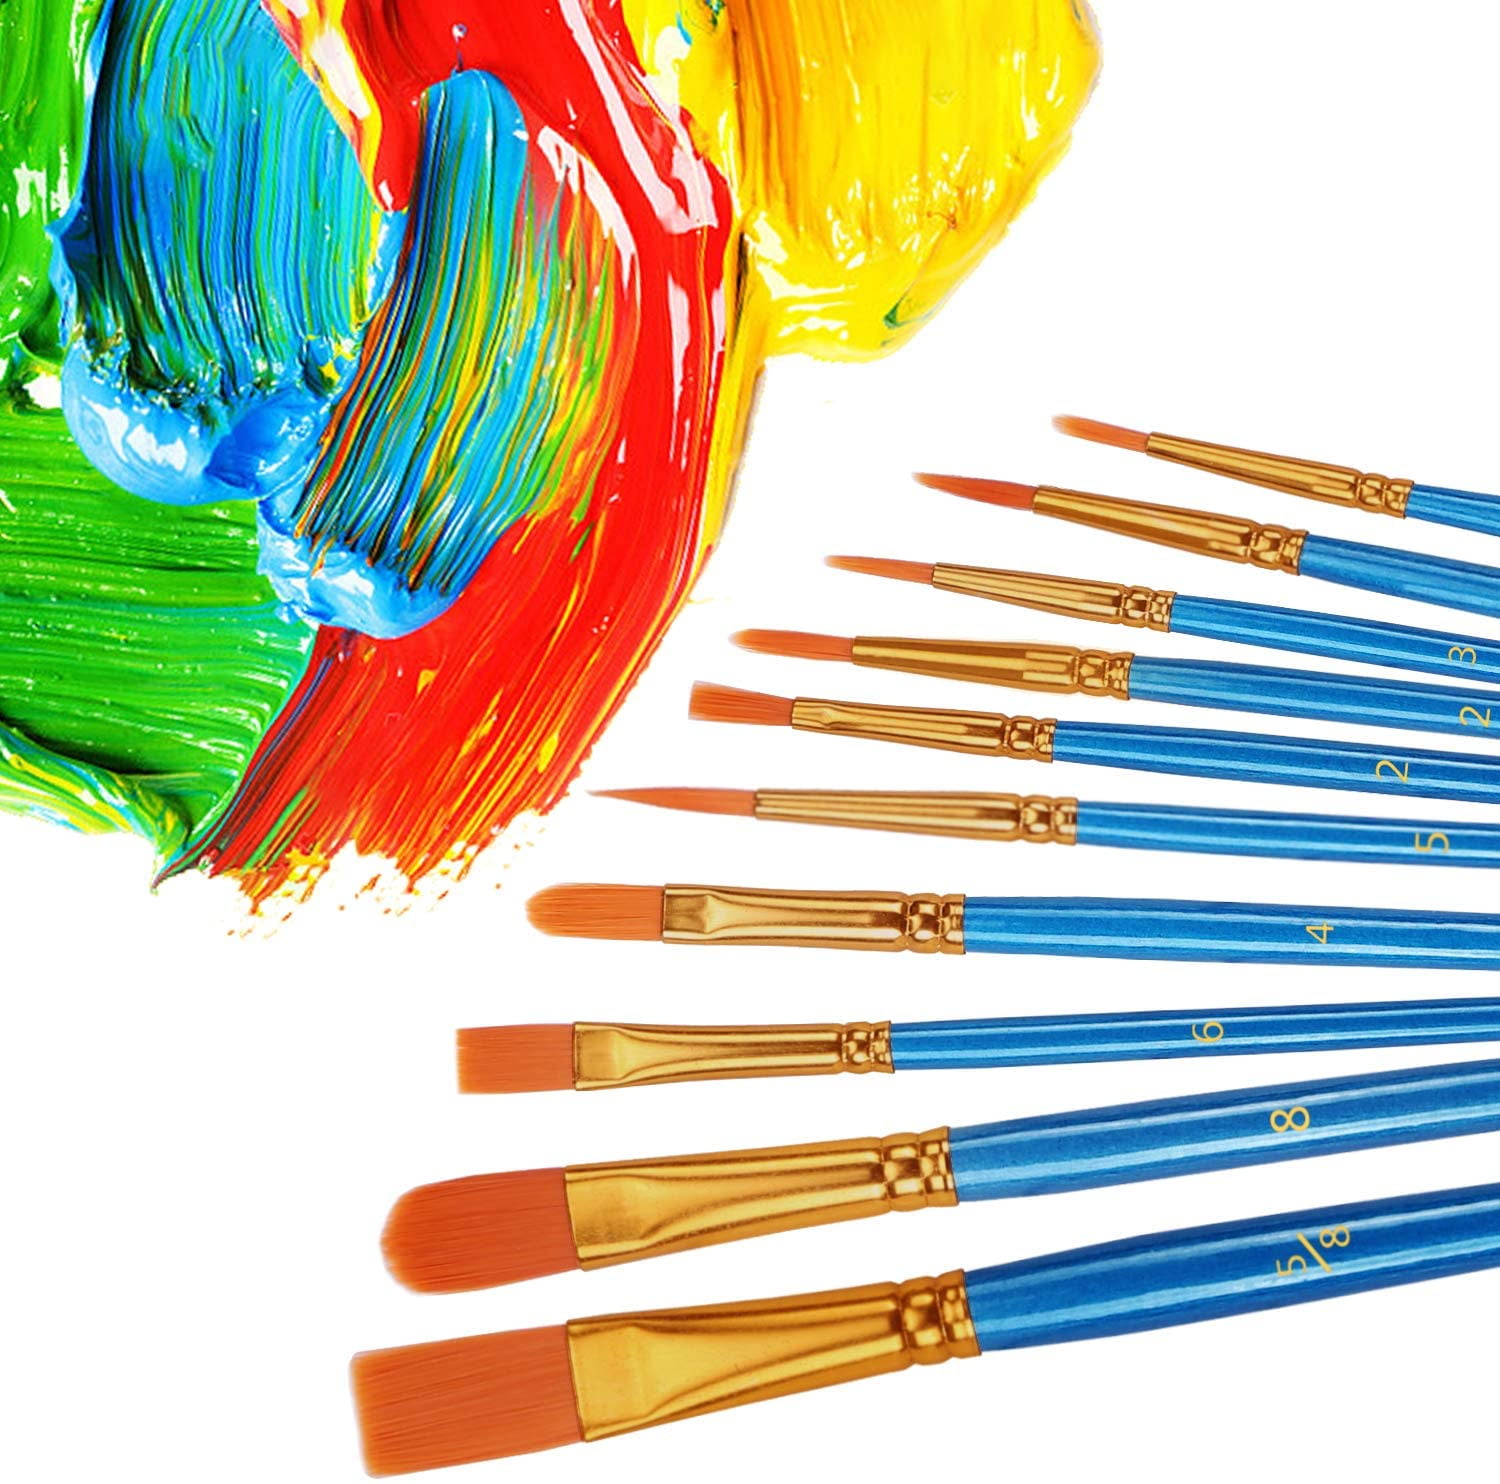 Paint Brushes Set, 20 Pcs Paint Brushes for Acrylic Painting